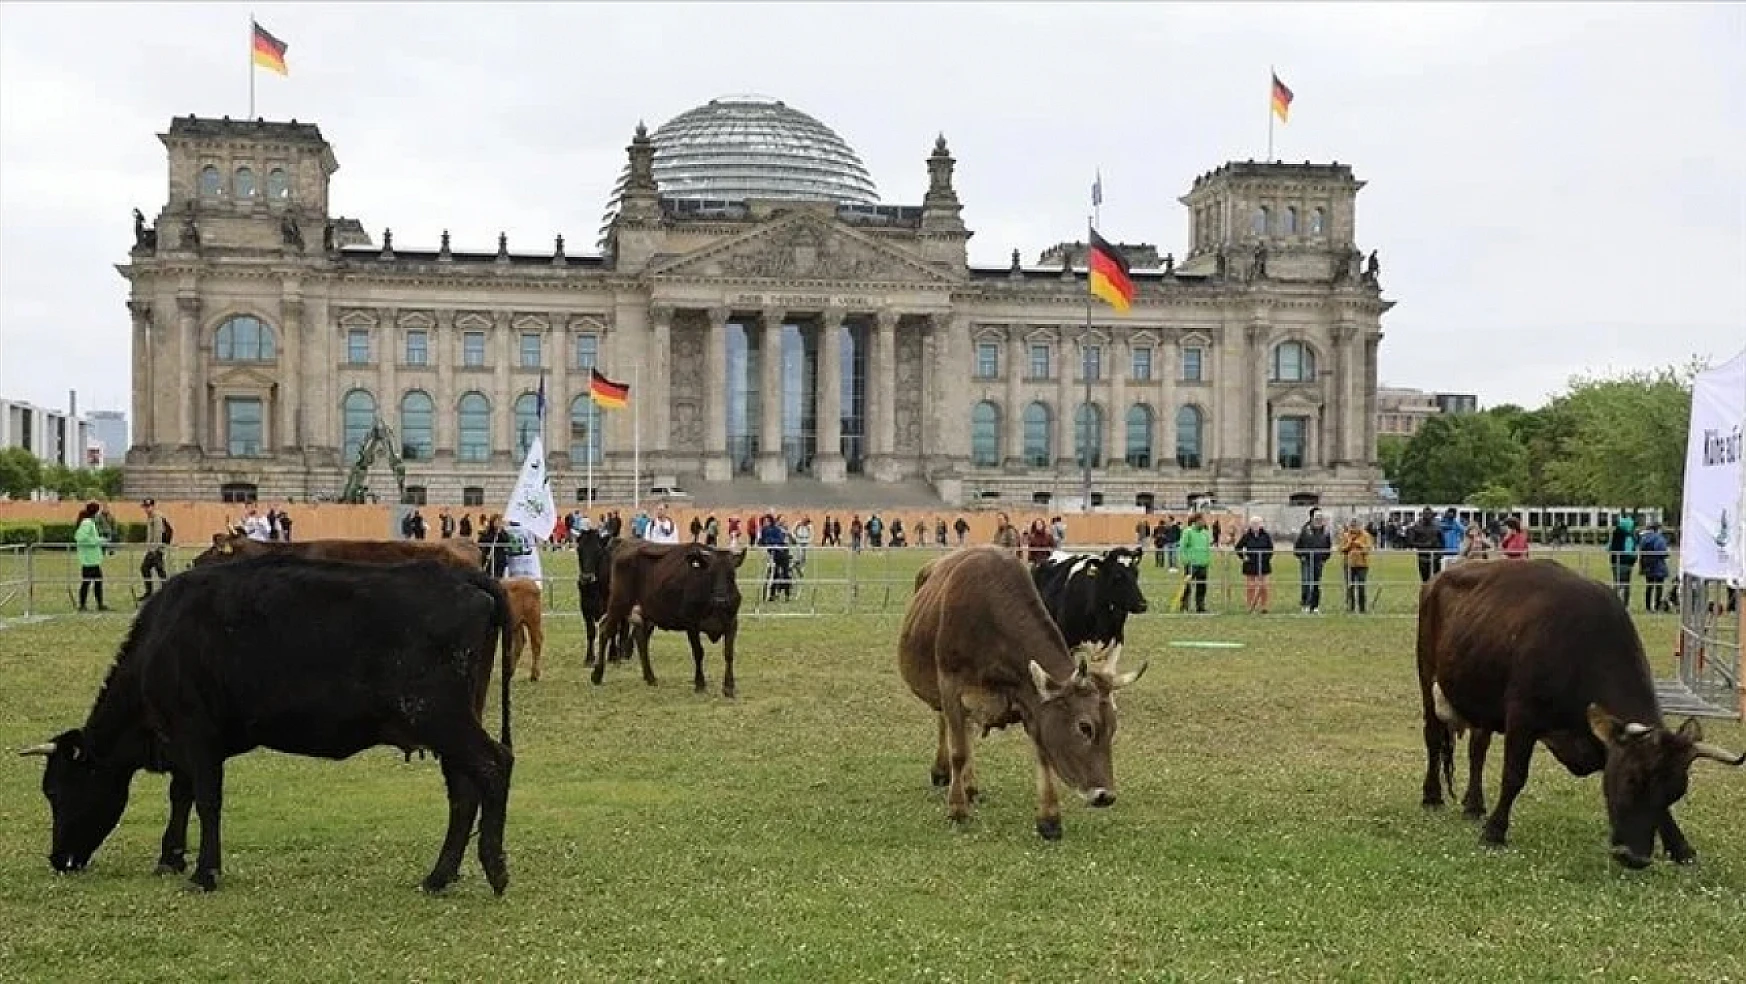 Almanya'da ilginç görüntüler. İnekler Meclis bahçesinde otluyor